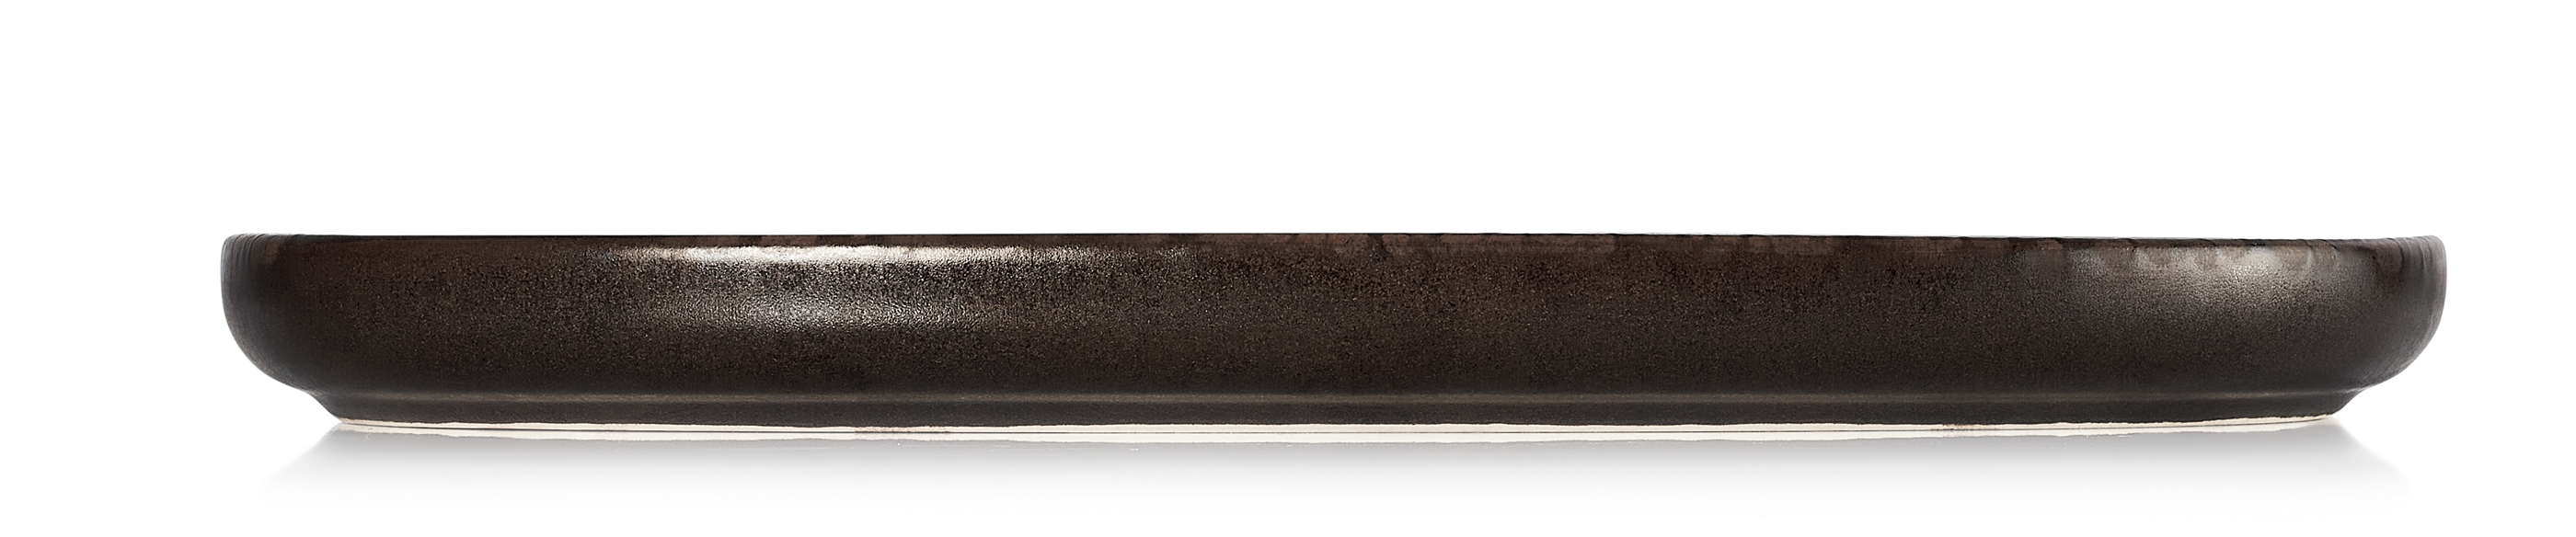 ROCKZZERO® Platte, 33 x 23 cm, Set á 4 Stück, metallic brown, Steinzeug